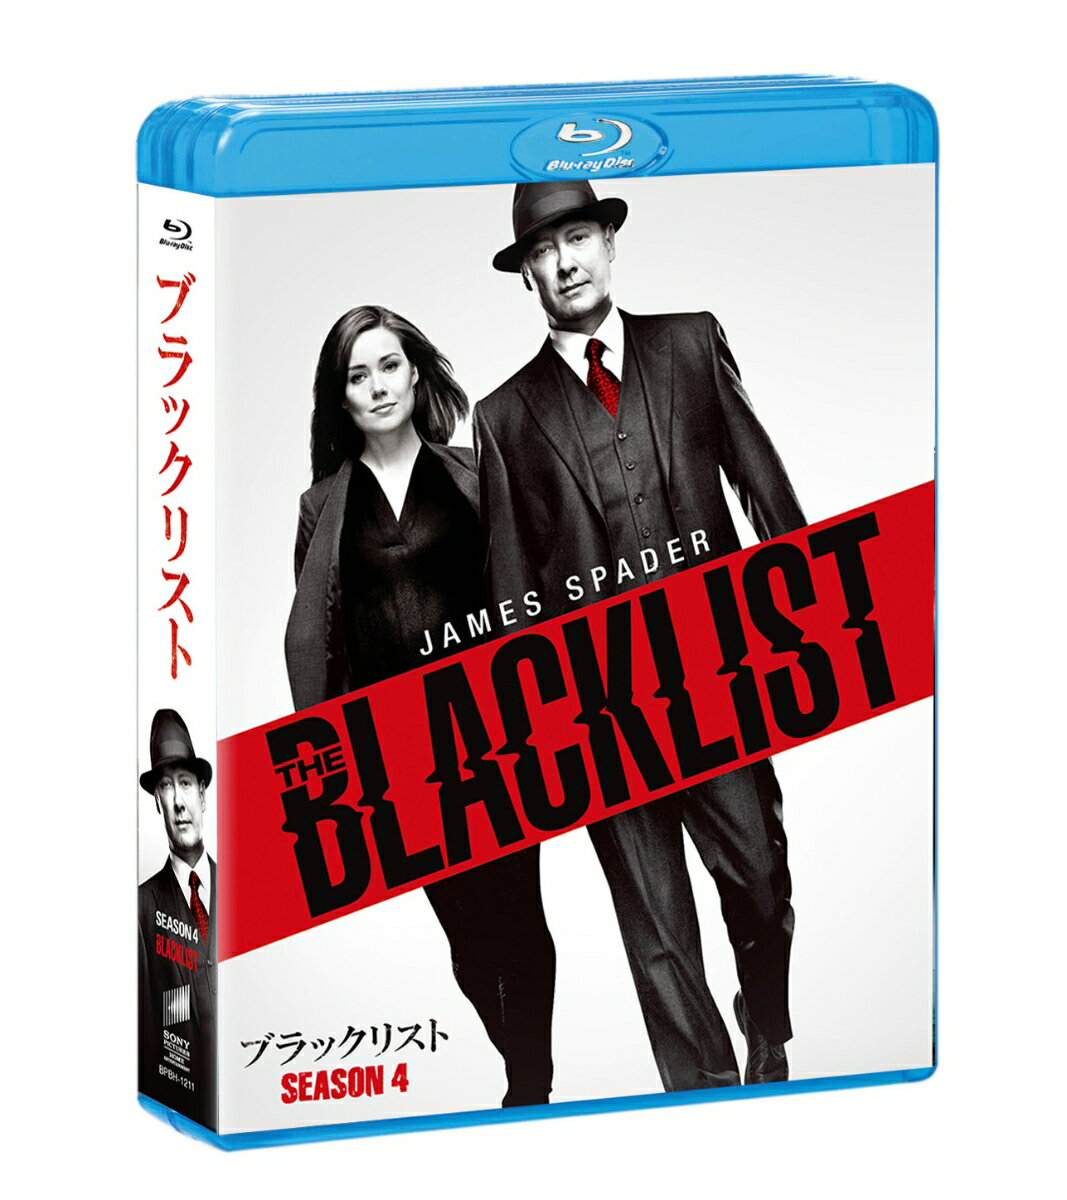 ブラックリスト シーズン4 ブルーレイ コンプリートパック【Blu-ray】